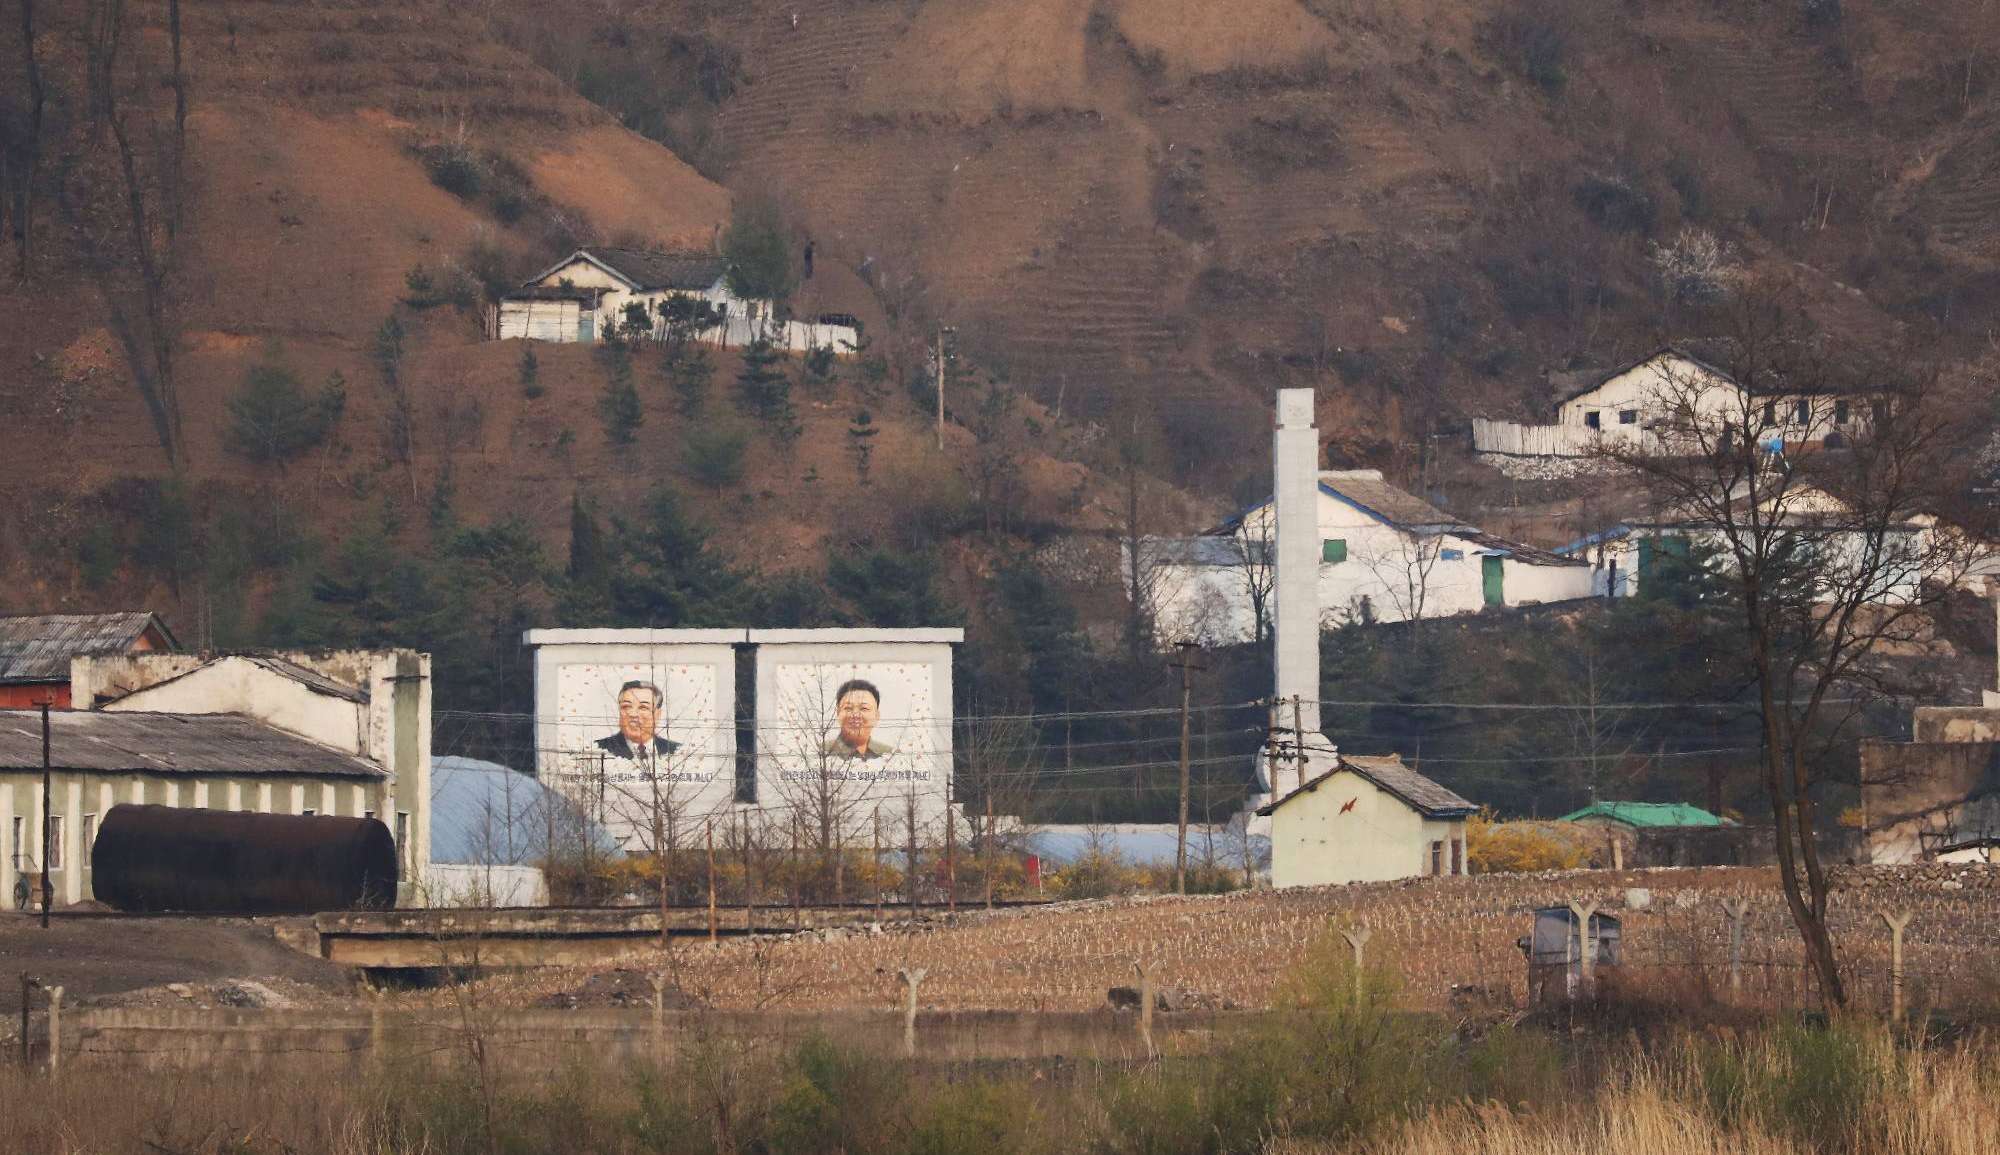 Coreia do Norte construiu muro nas suas fronteiras durante pandemia Lorena Bueri